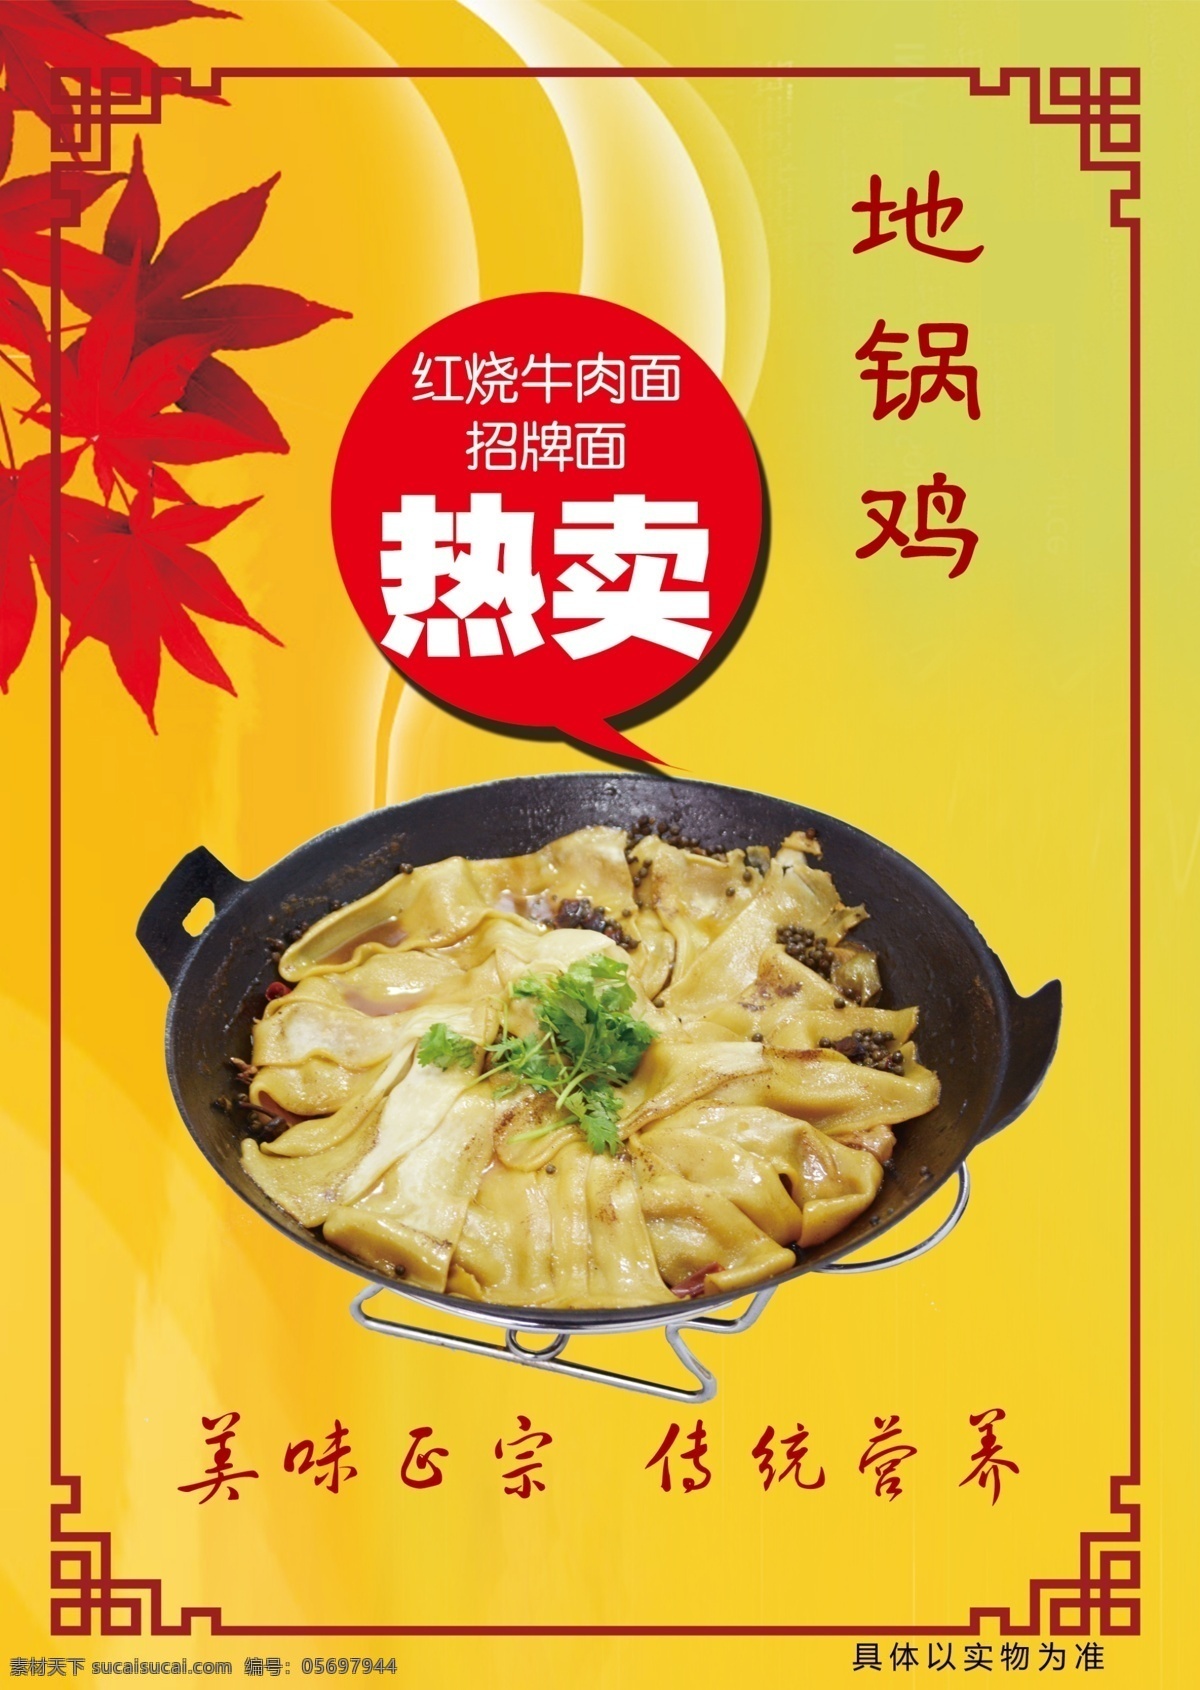 地锅鸡 幻灯片 饭店招牌菜 饭店 主打 招牌菜 小吃食品